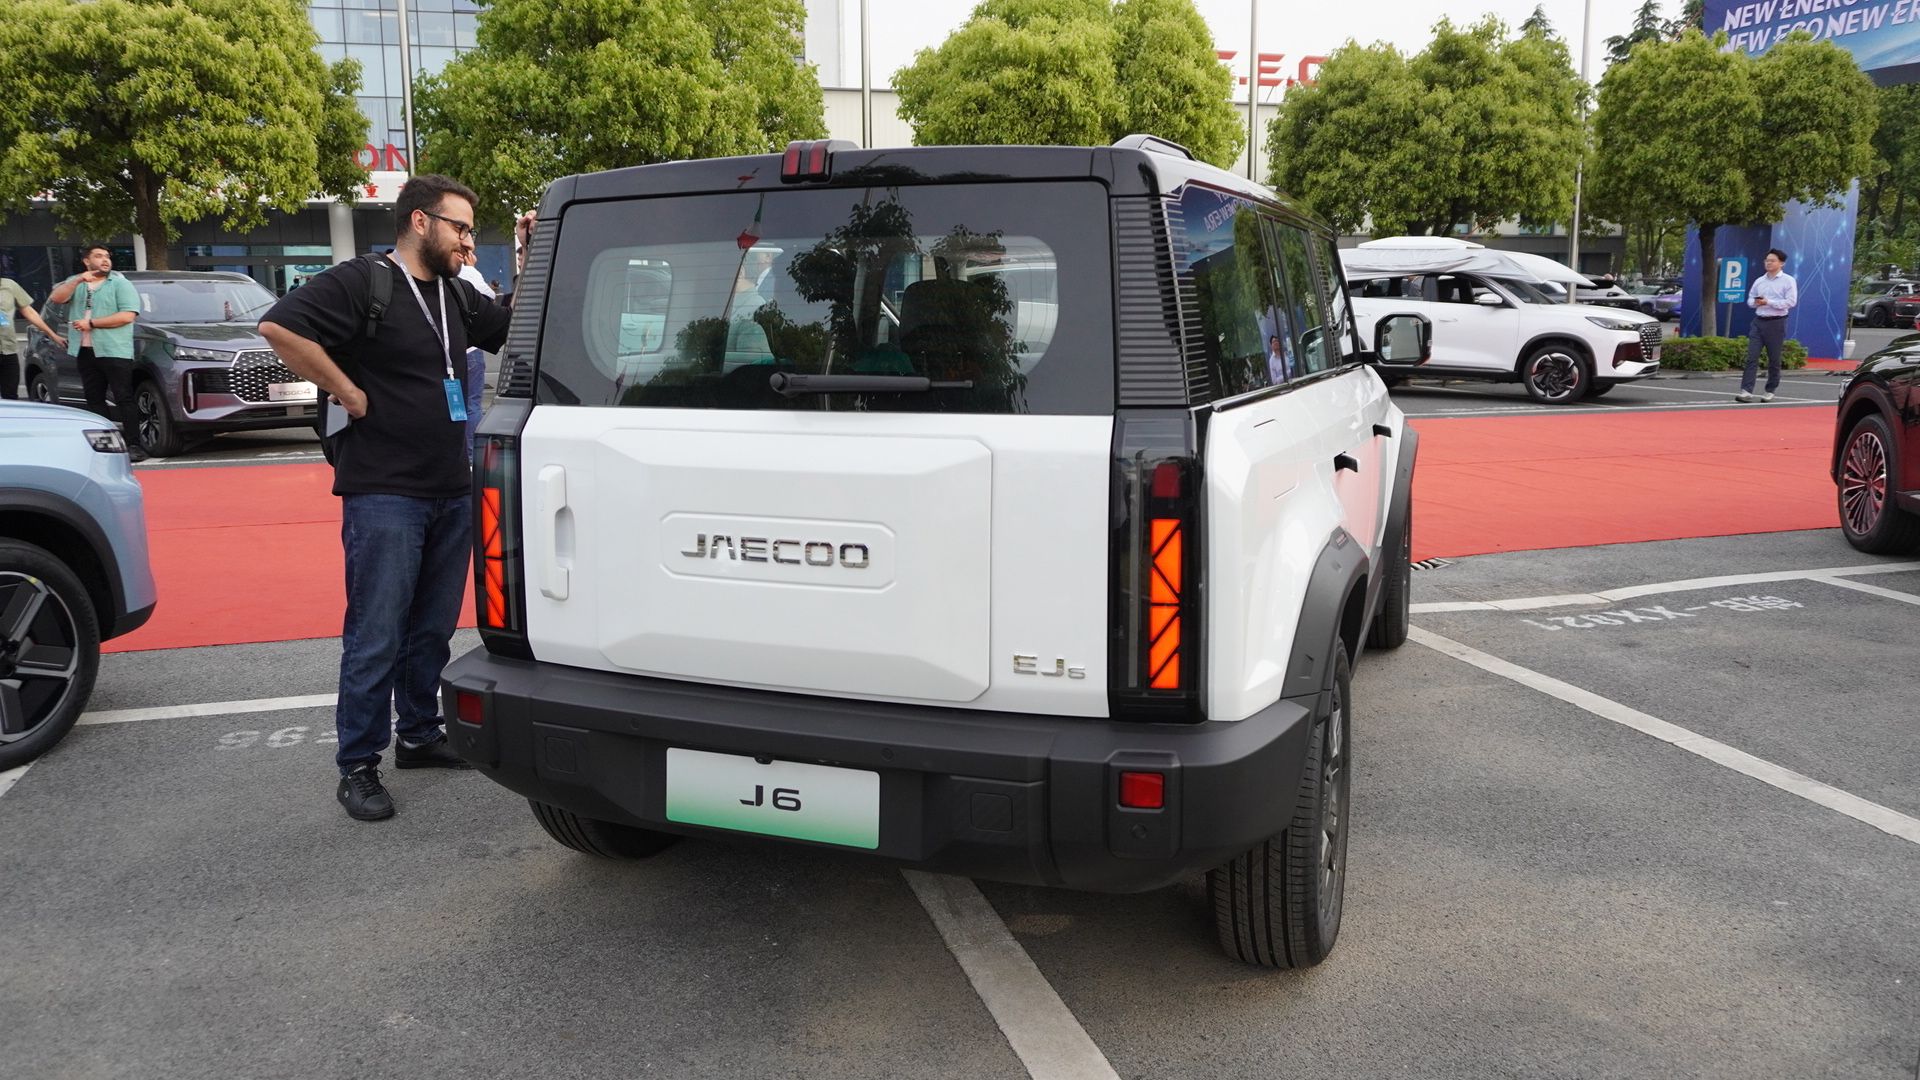 spesifikasi mobil listrik jaecoo j6, rencananya masuk indonesia 2025